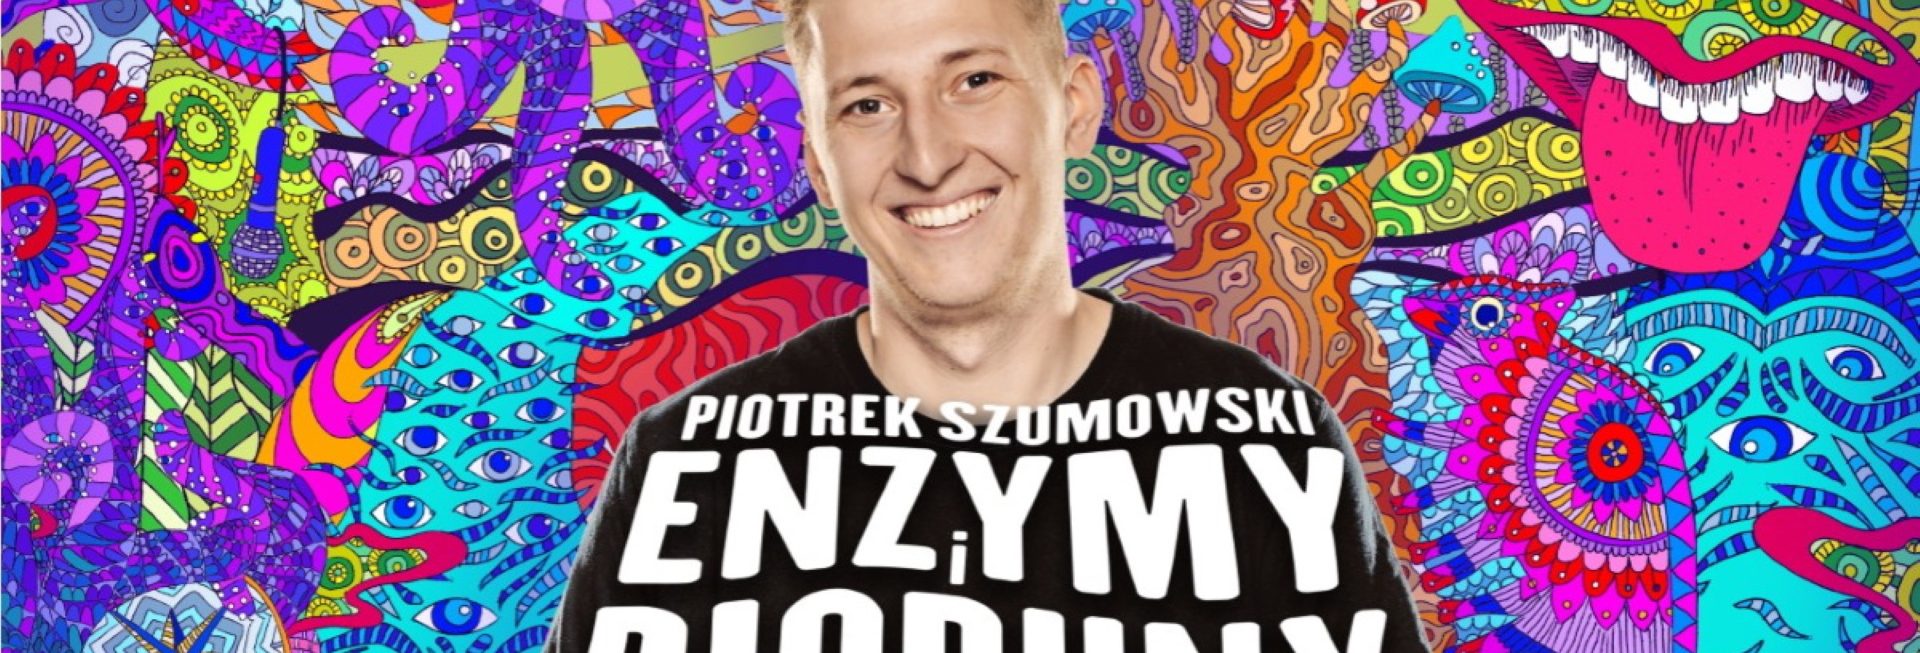 Plakat graficzny zapraszający do Olsztyna na występ Stand-up Piotrek Szumowski "Enzymy i Pioruny".